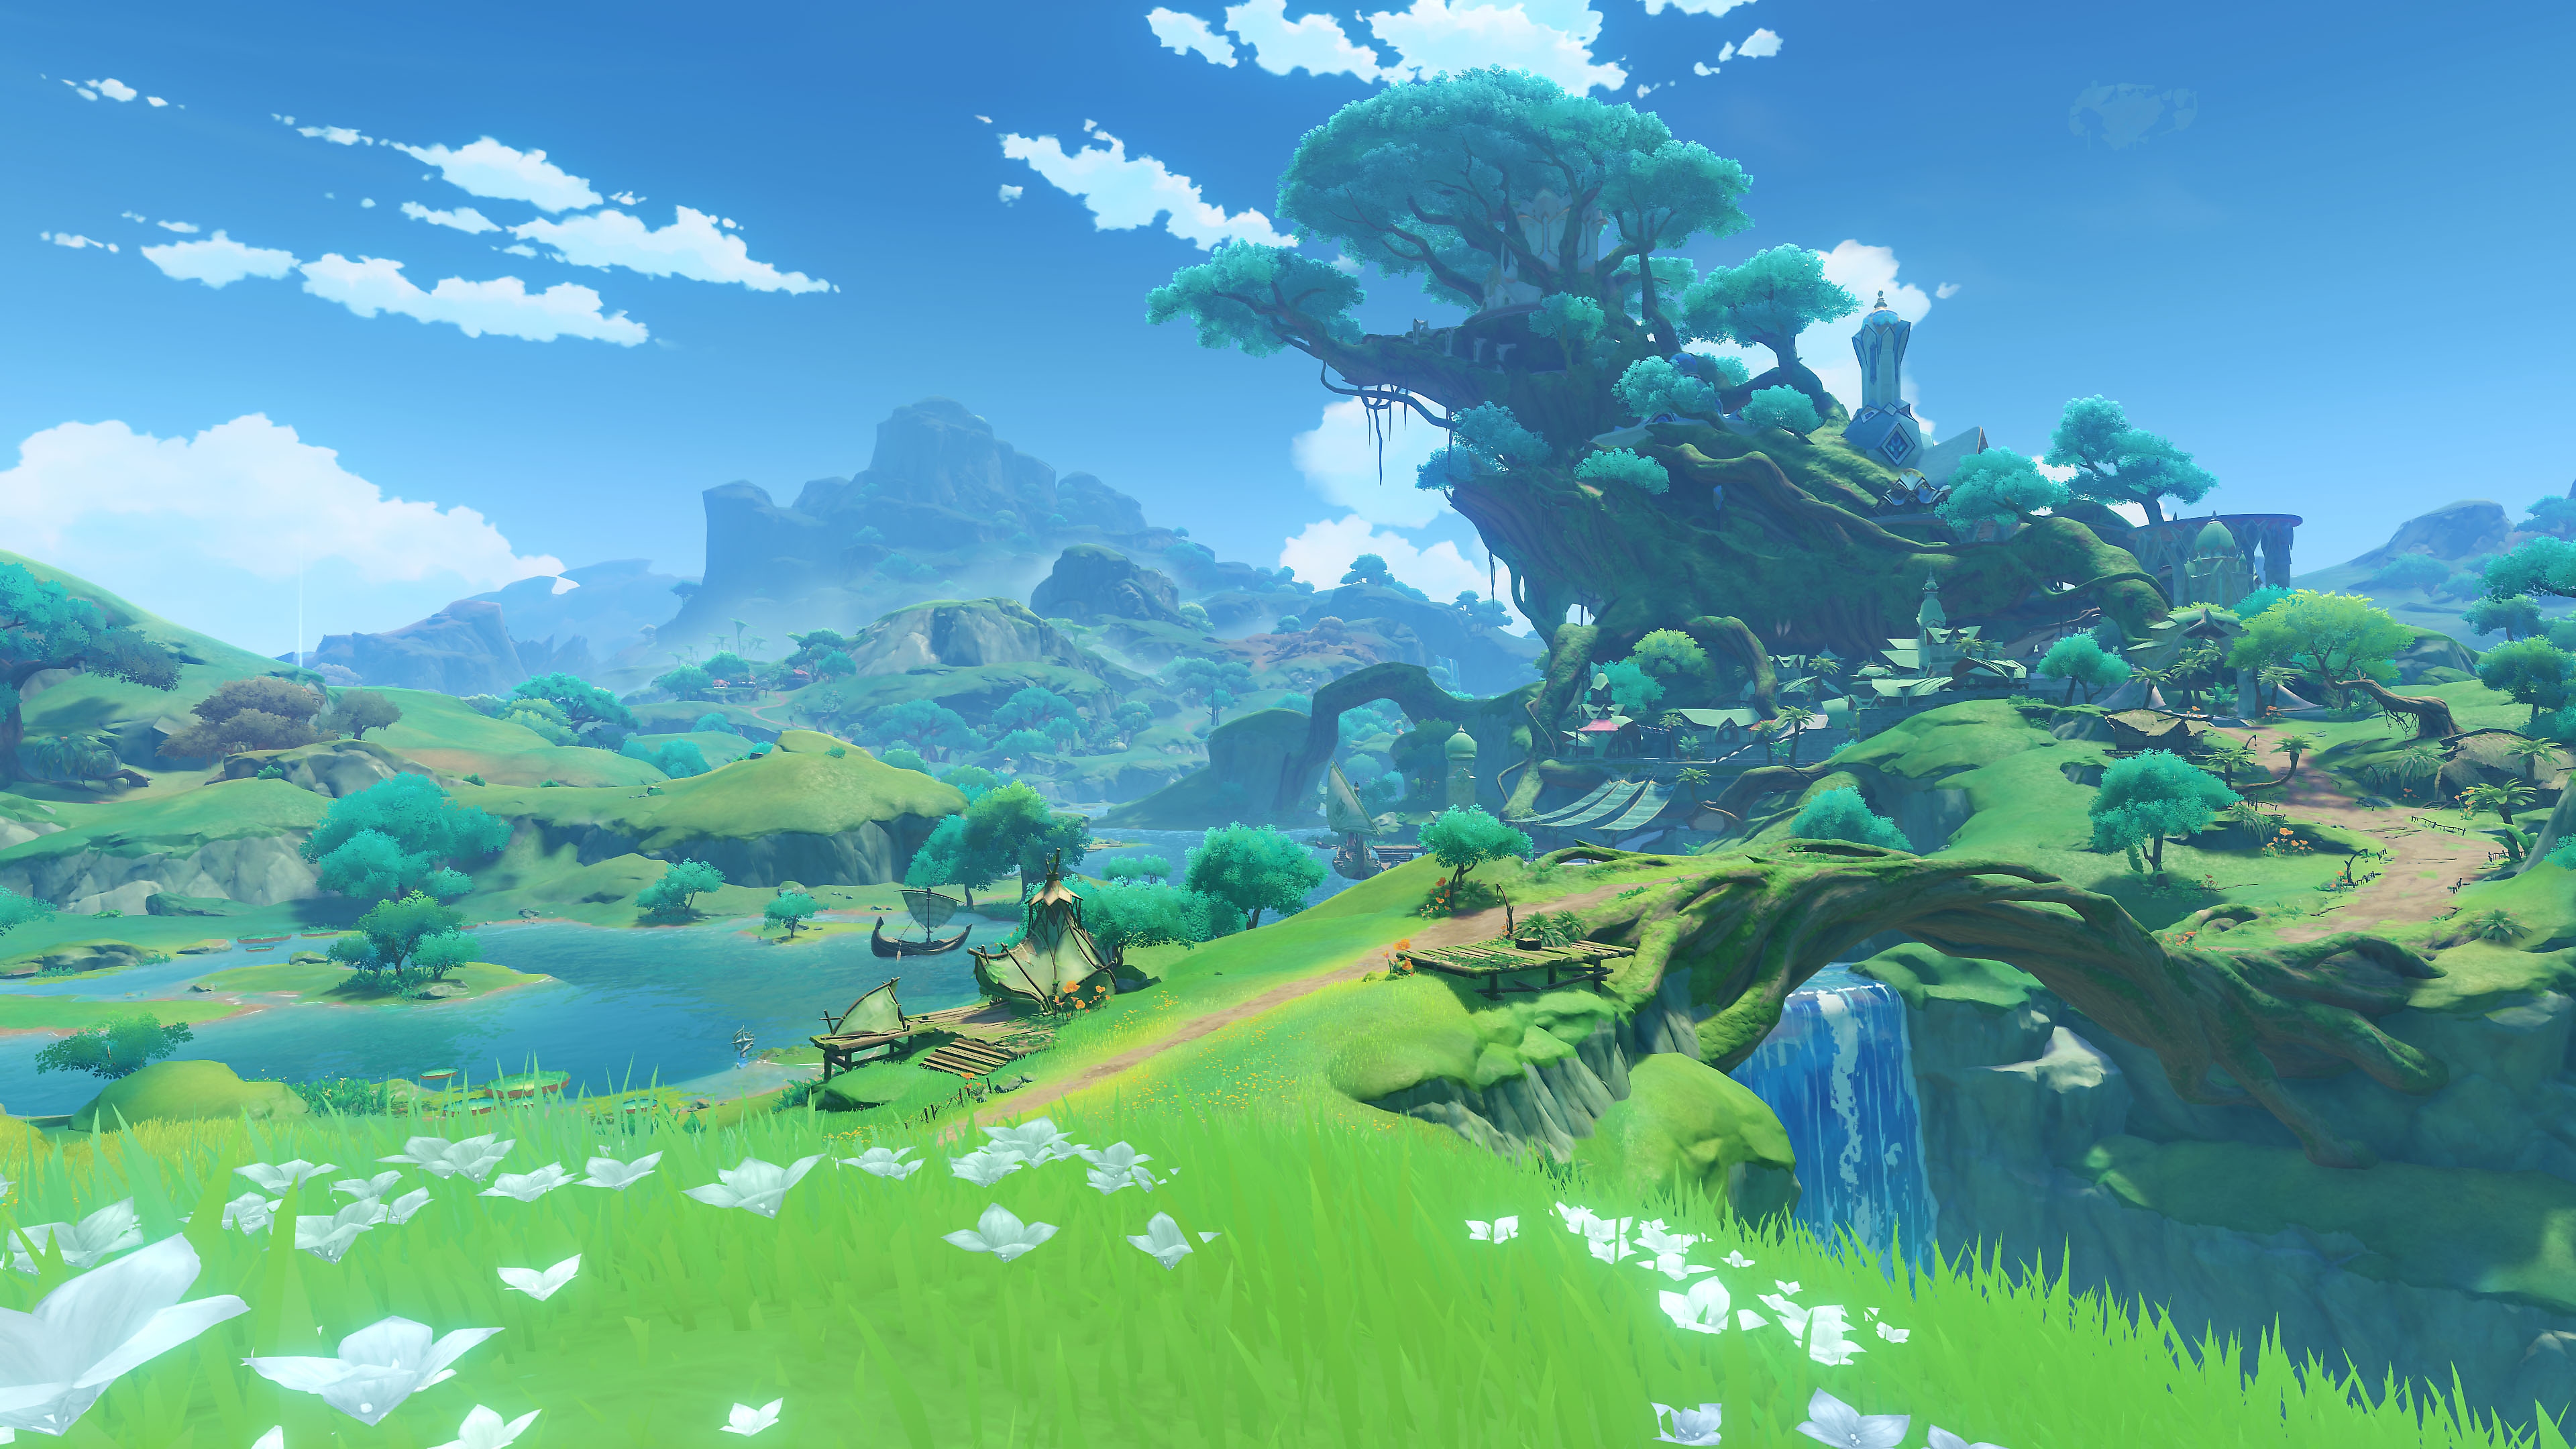 Genshin Impact: 3.0 Update screenshot showing a lush green landscape